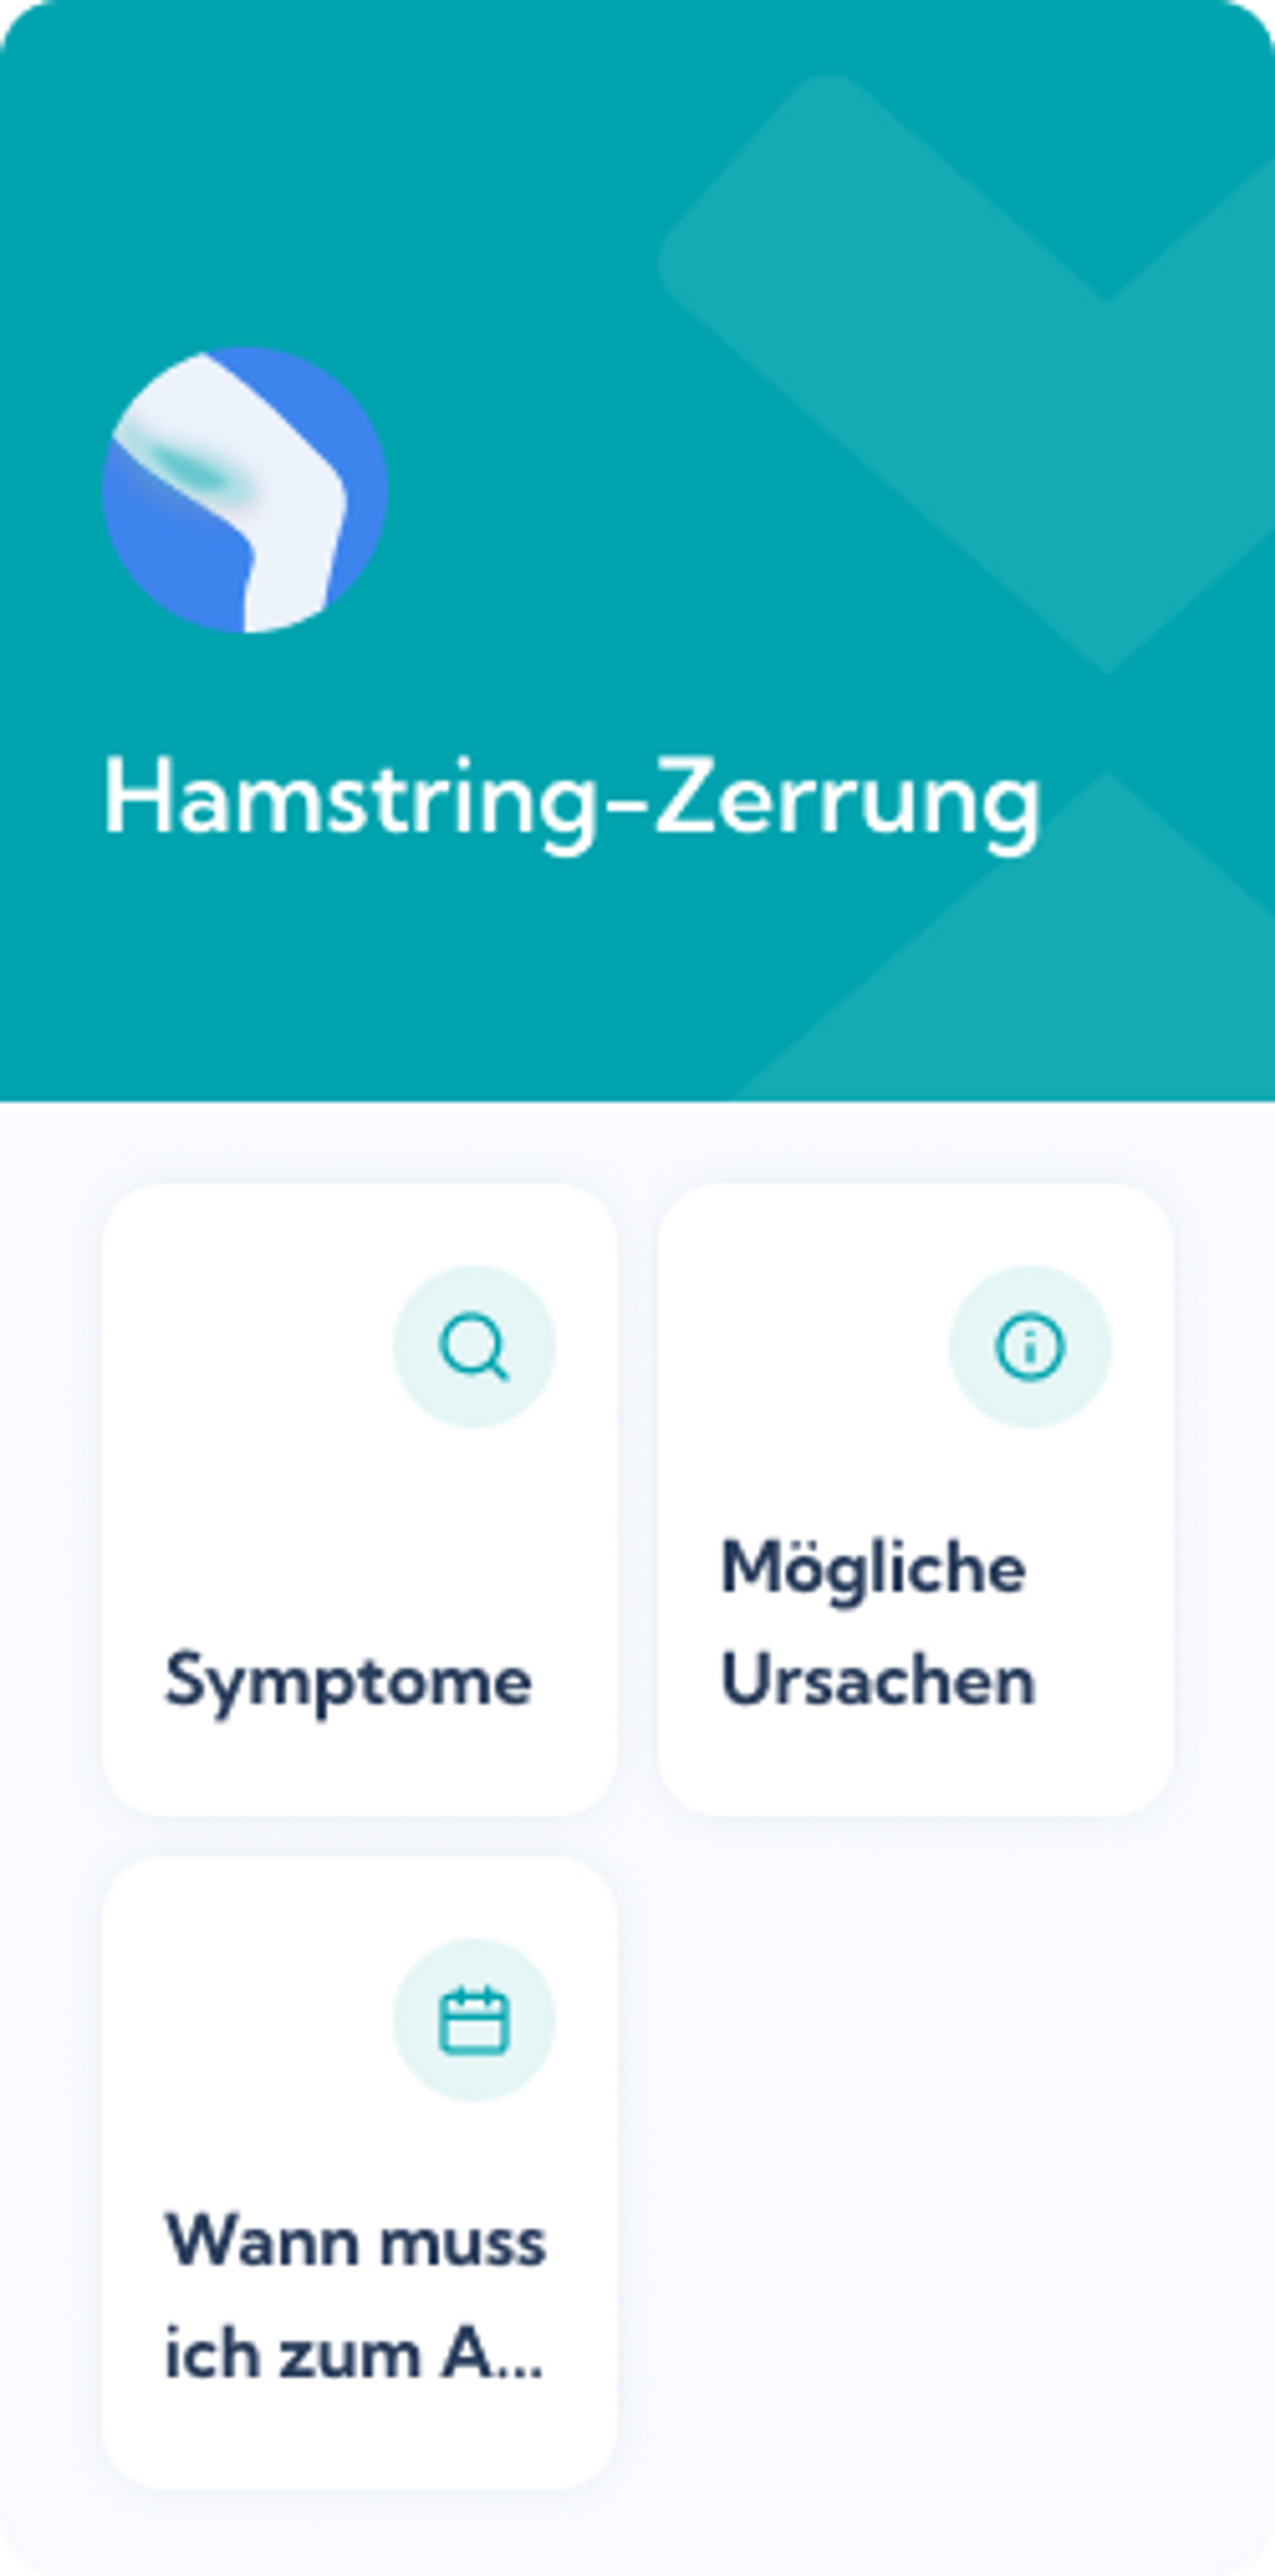 Hamstring-Zerrung Reha-Plan Dashboard von Exakt Health 